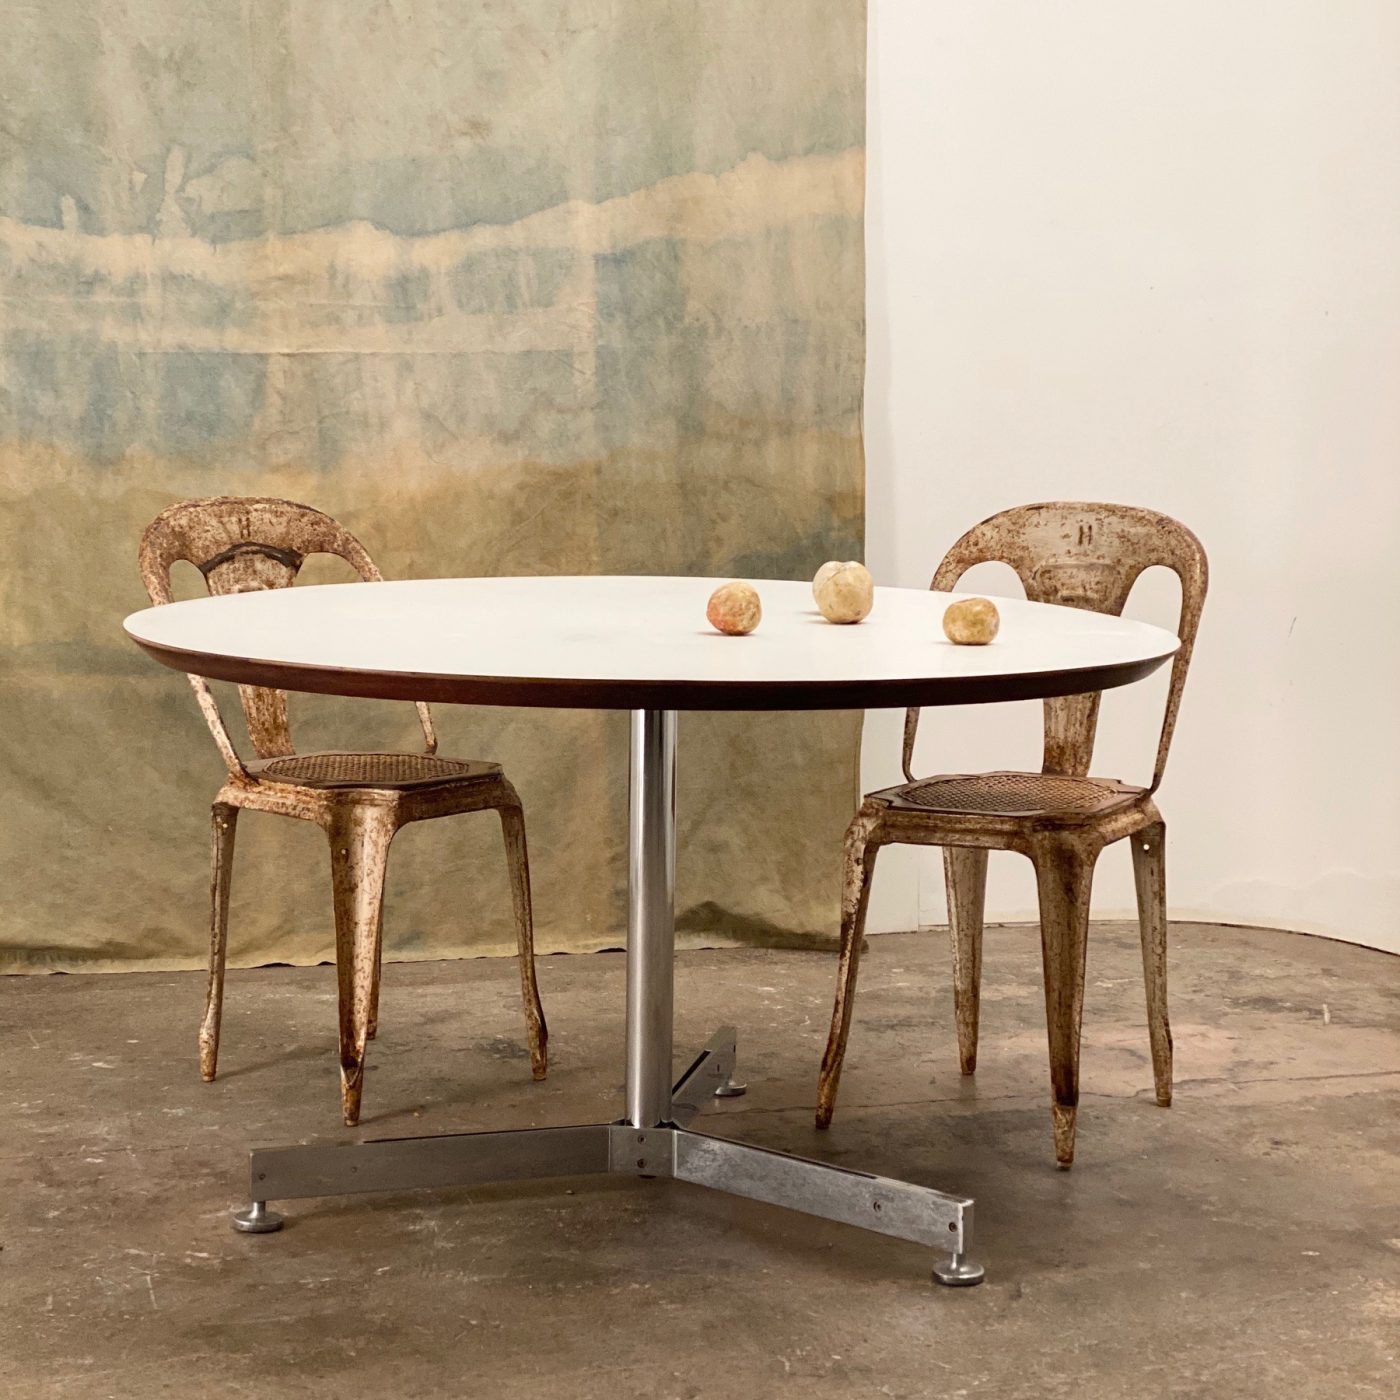 objet-vagabond-vintage-table0003